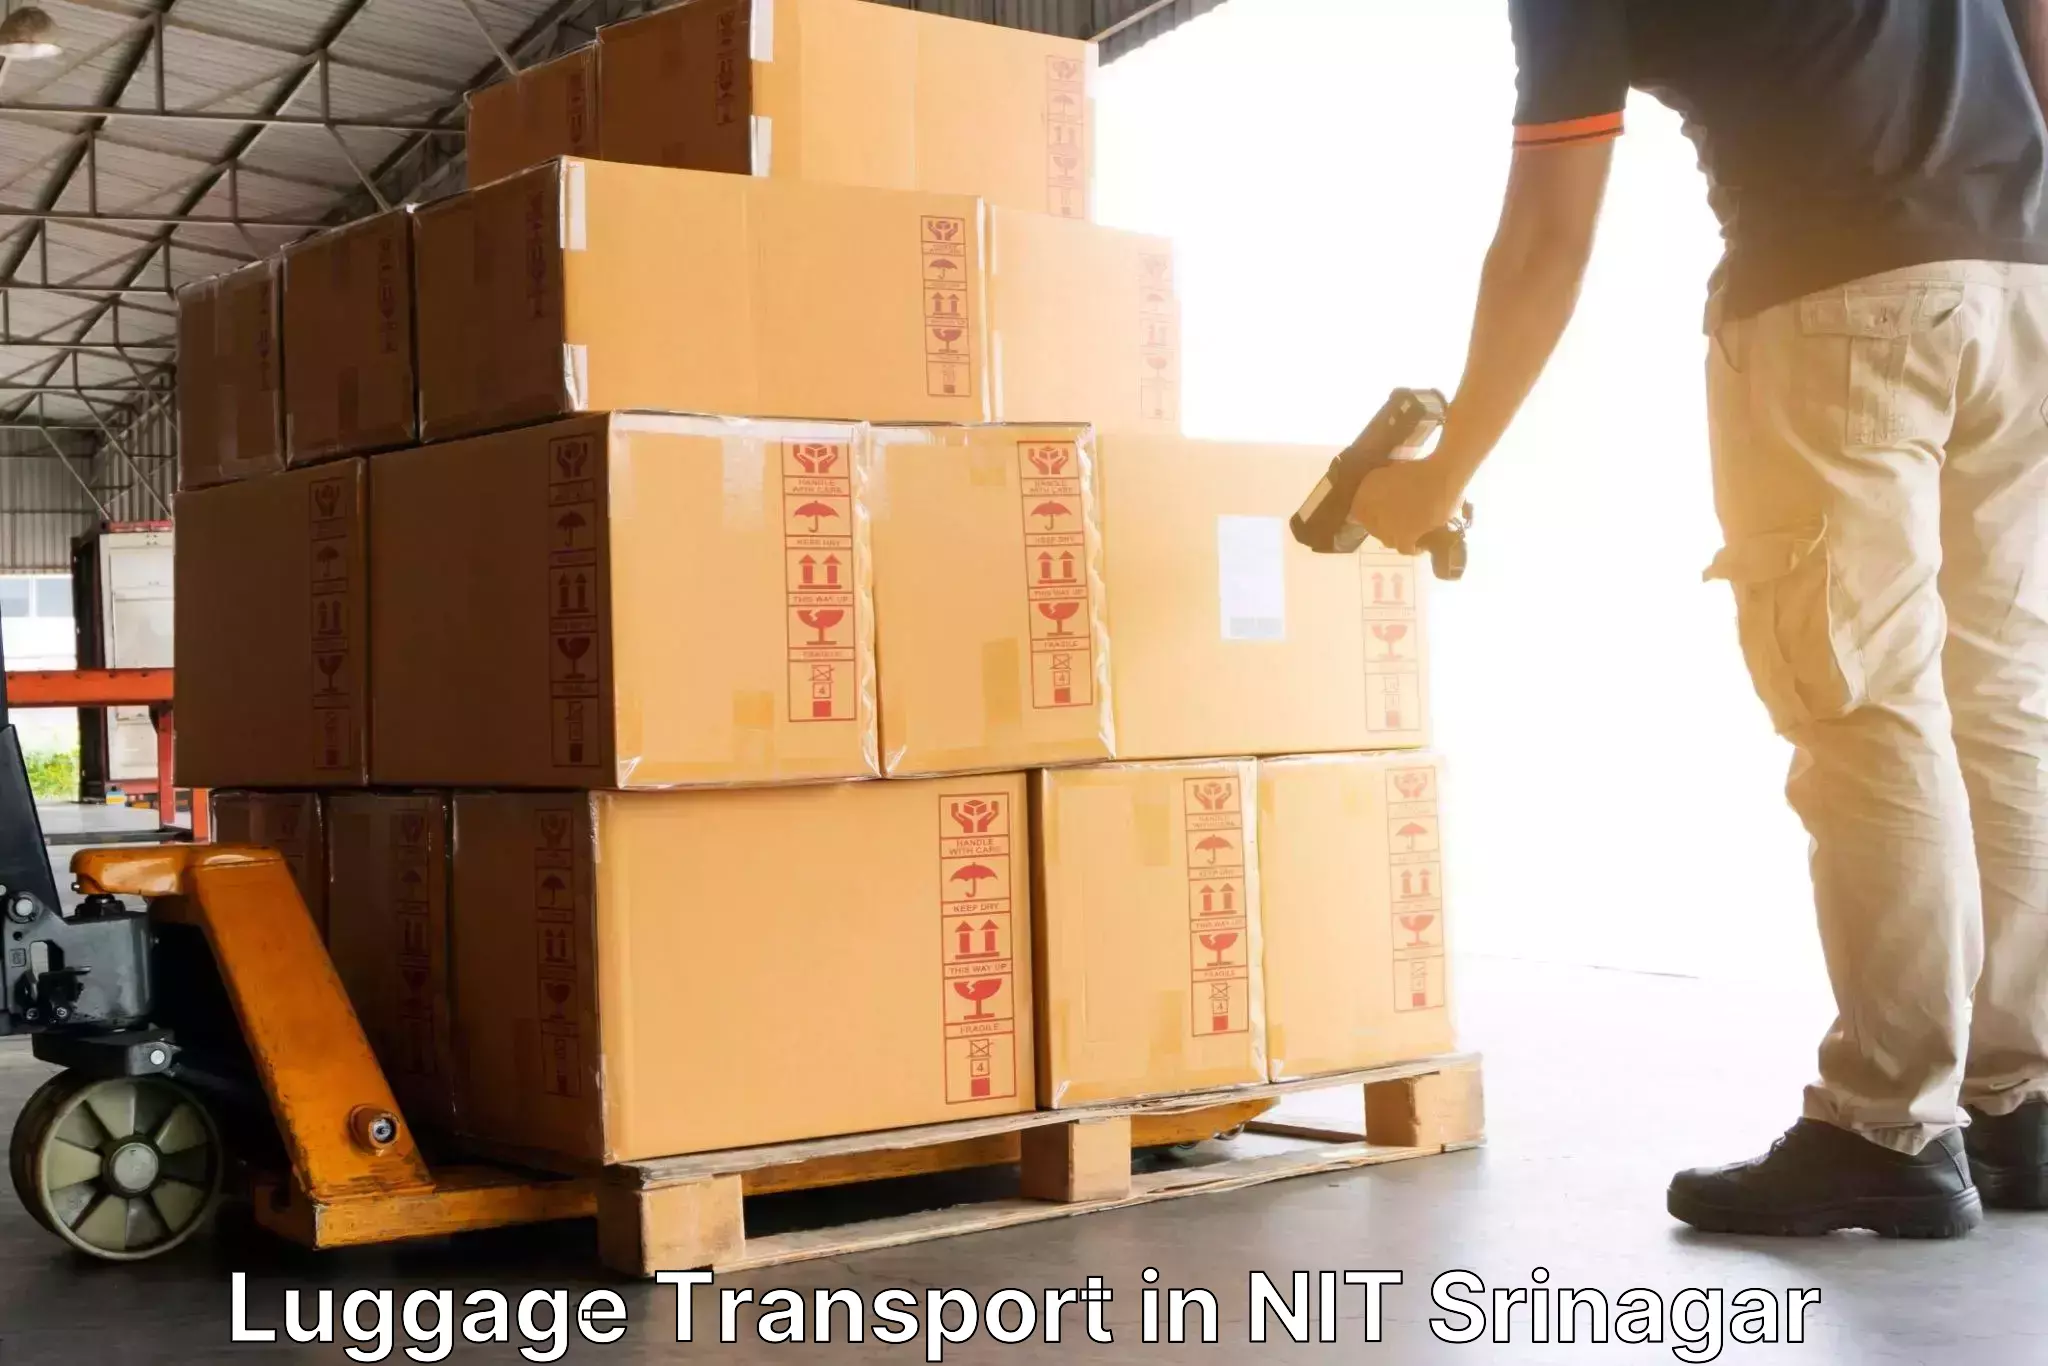 Luggage shipment strategy in NIT Srinagar